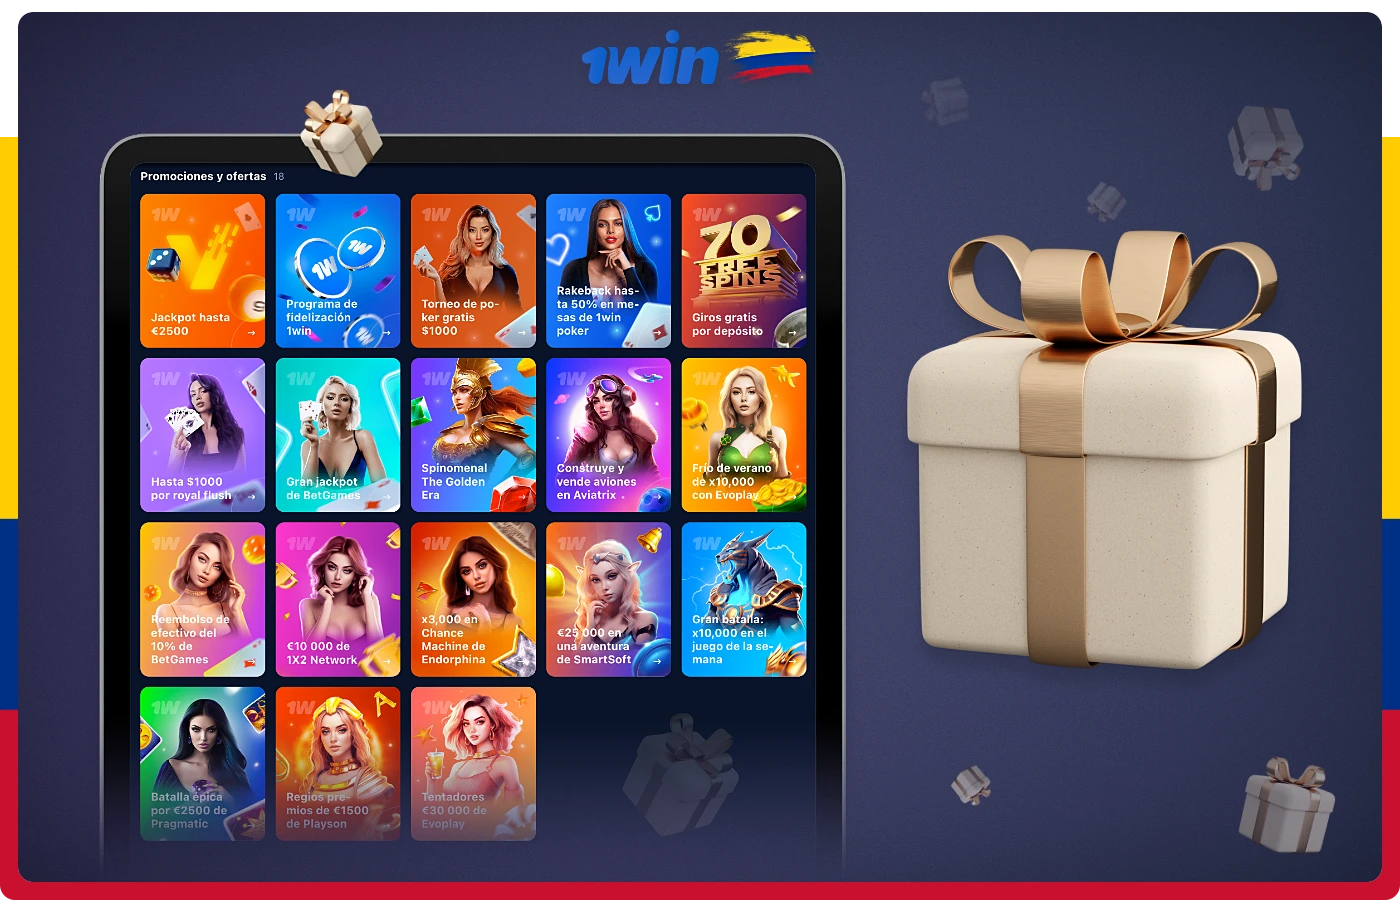 1win ofrece a sus usuarios colombianos numerosos bonos y promociones